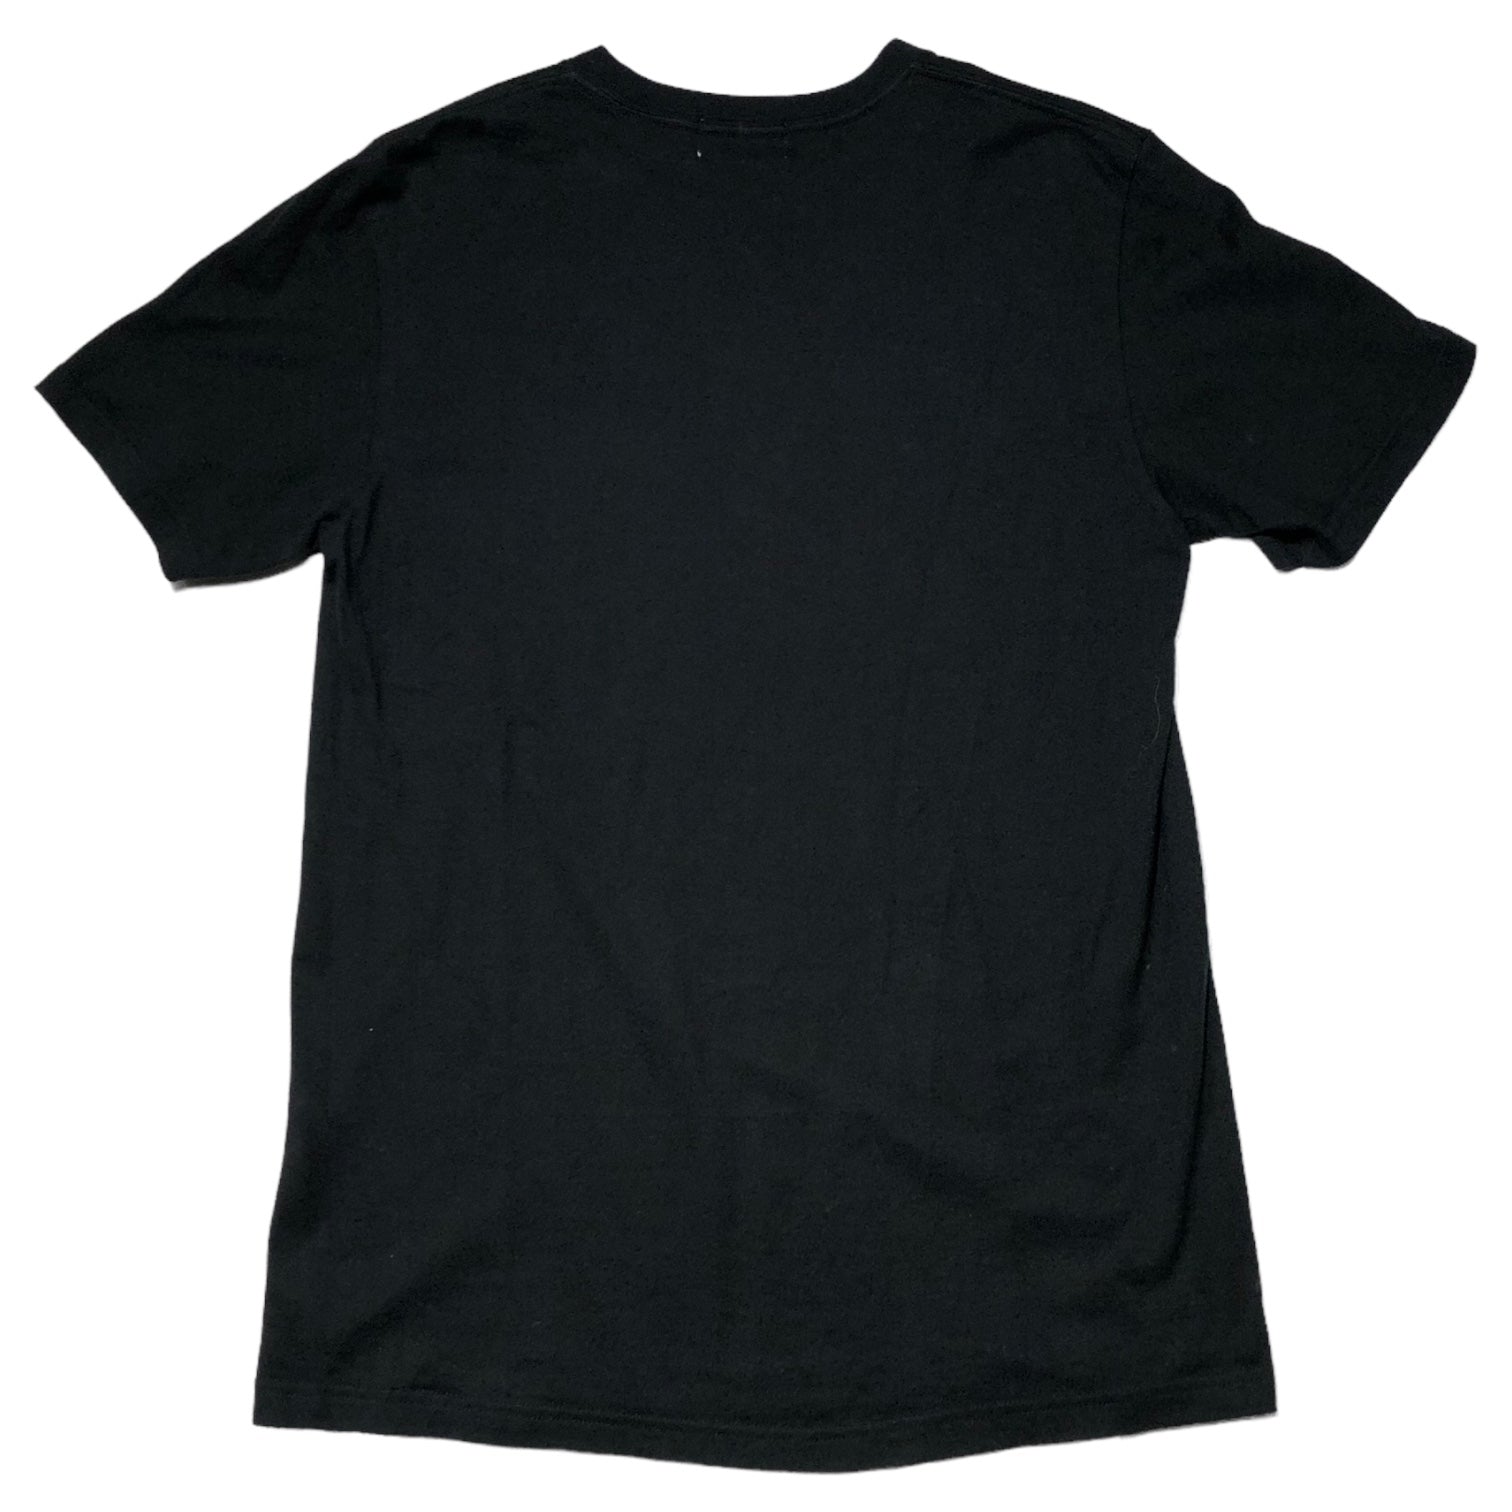 GOODENOUGH(グッドイナフ) 15SS REACTIVE TEE リアクティブ Tシャツ 90年代復刻 GE-157010 S ブラック 品質表示タグ無